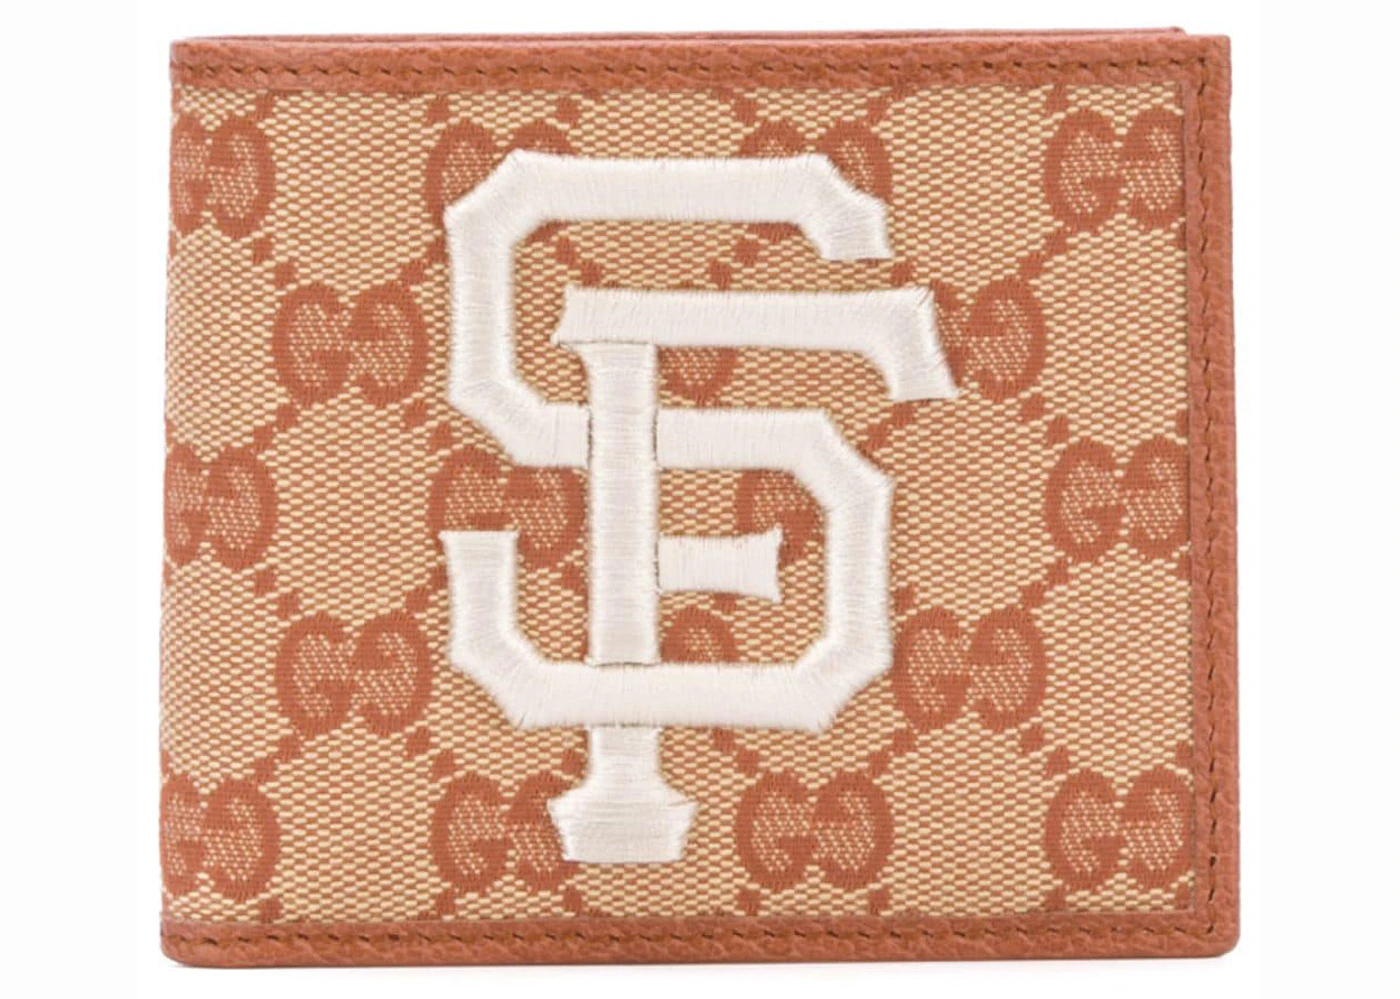 San Francisco Giants Billfold Wallet